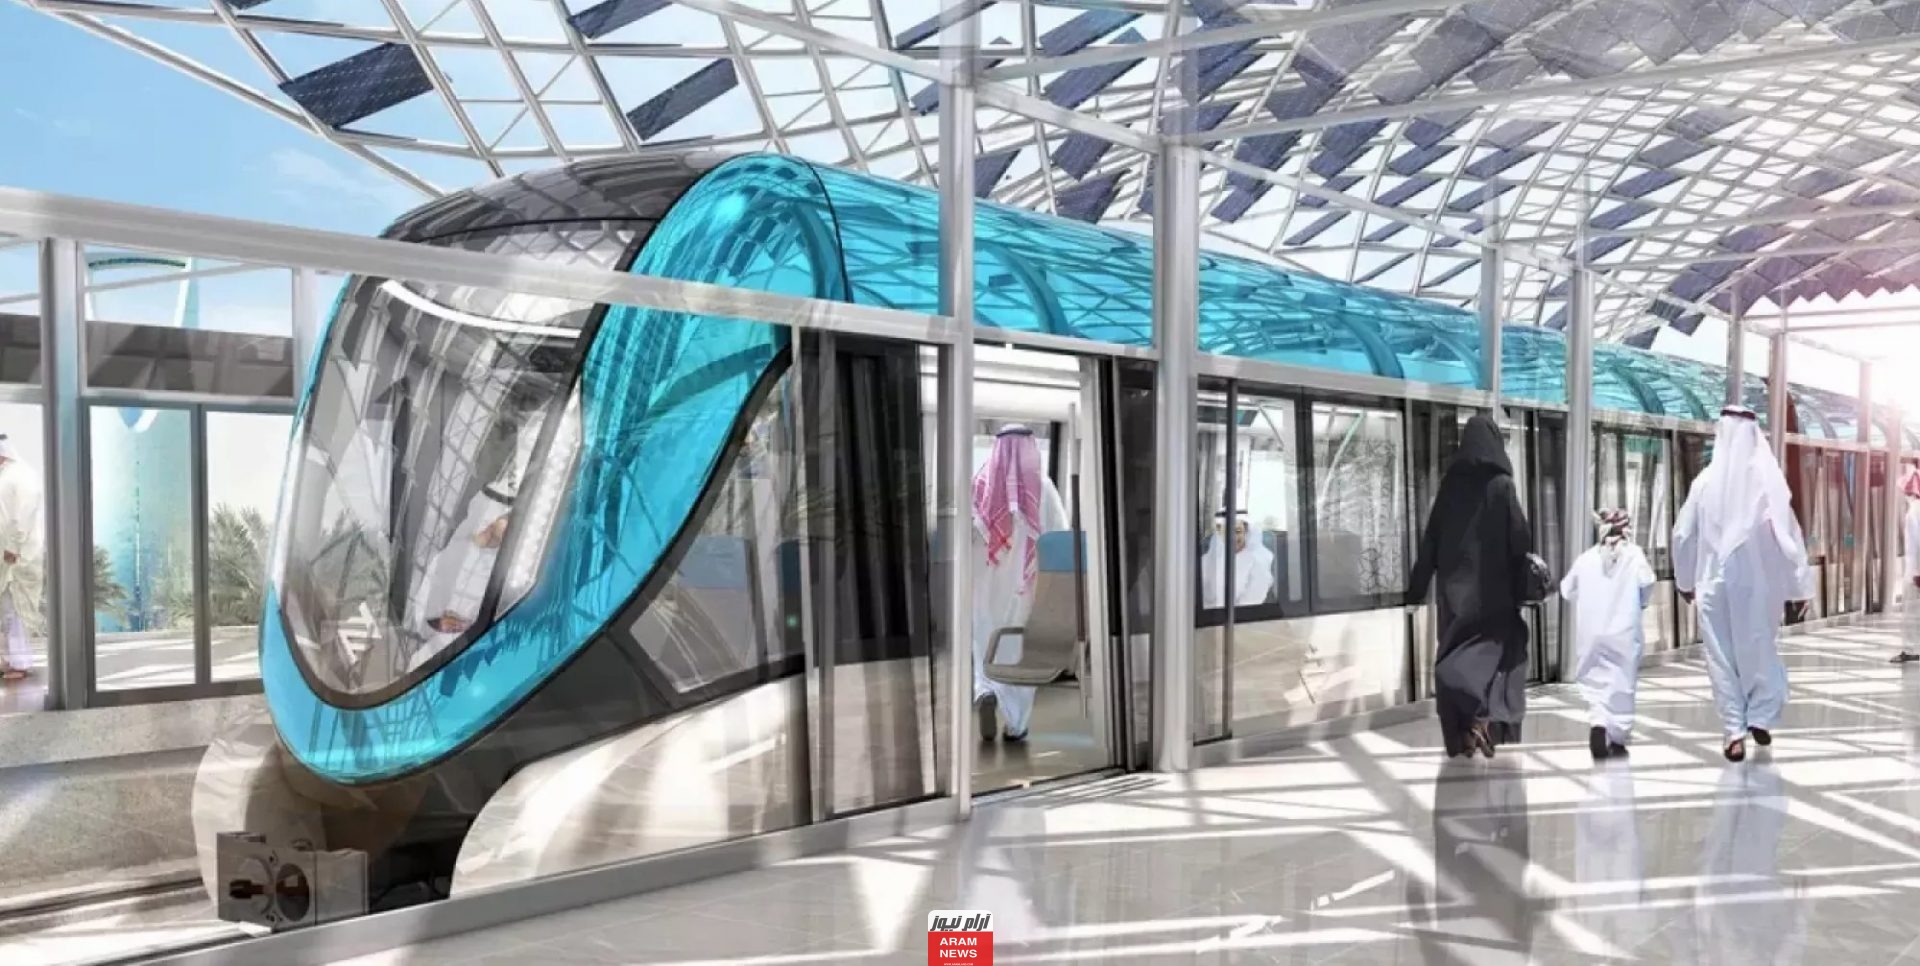 تعرف على موعد تشغيل مترو الرياض 1445/2024 بشكل رسمي